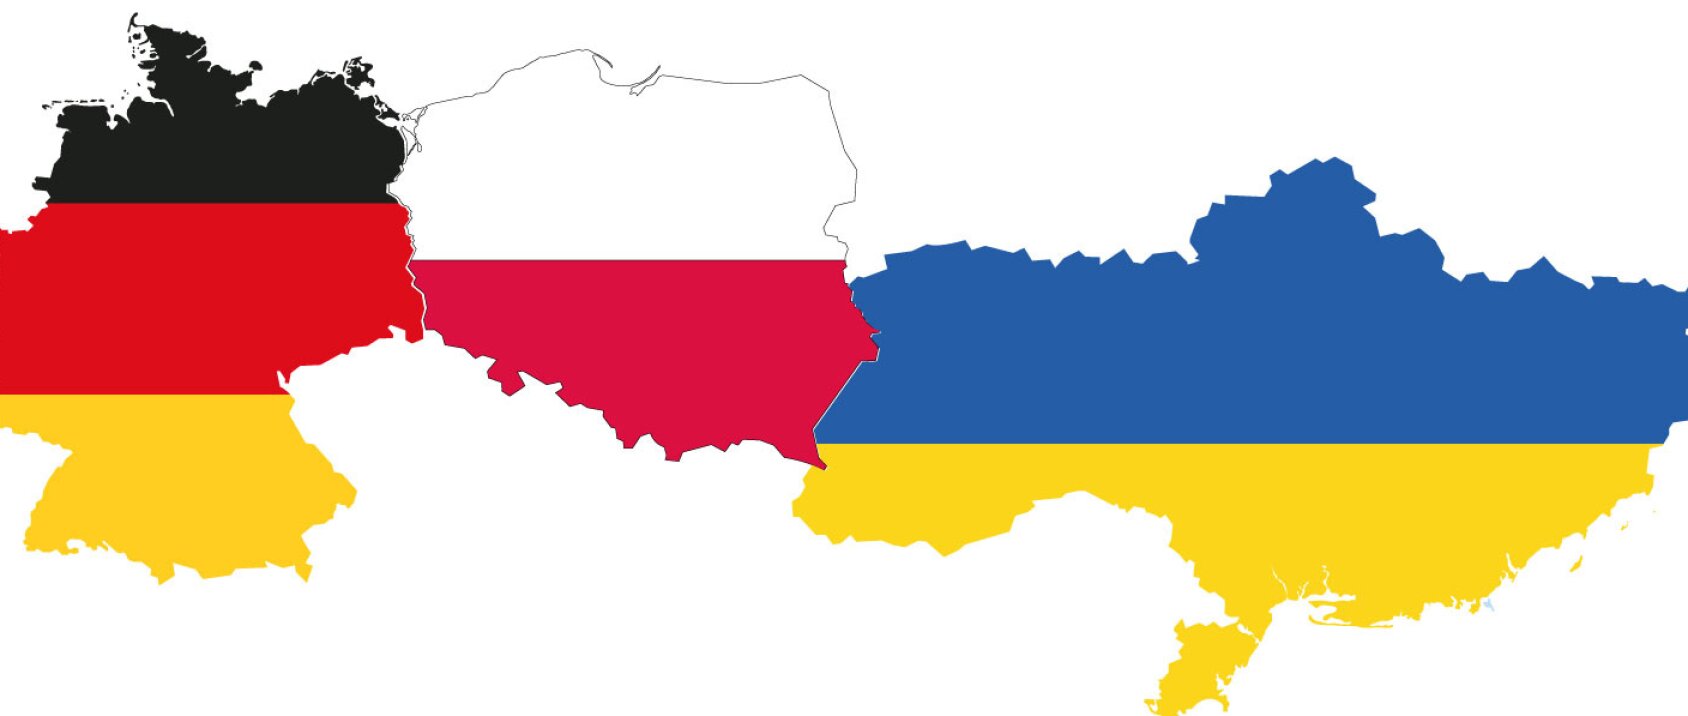 Polacy i Niemcy popierają przyjęcie ukraińskich uchodźców, zbrojenie ukraińskiej armii i sankcje wobec Rosji